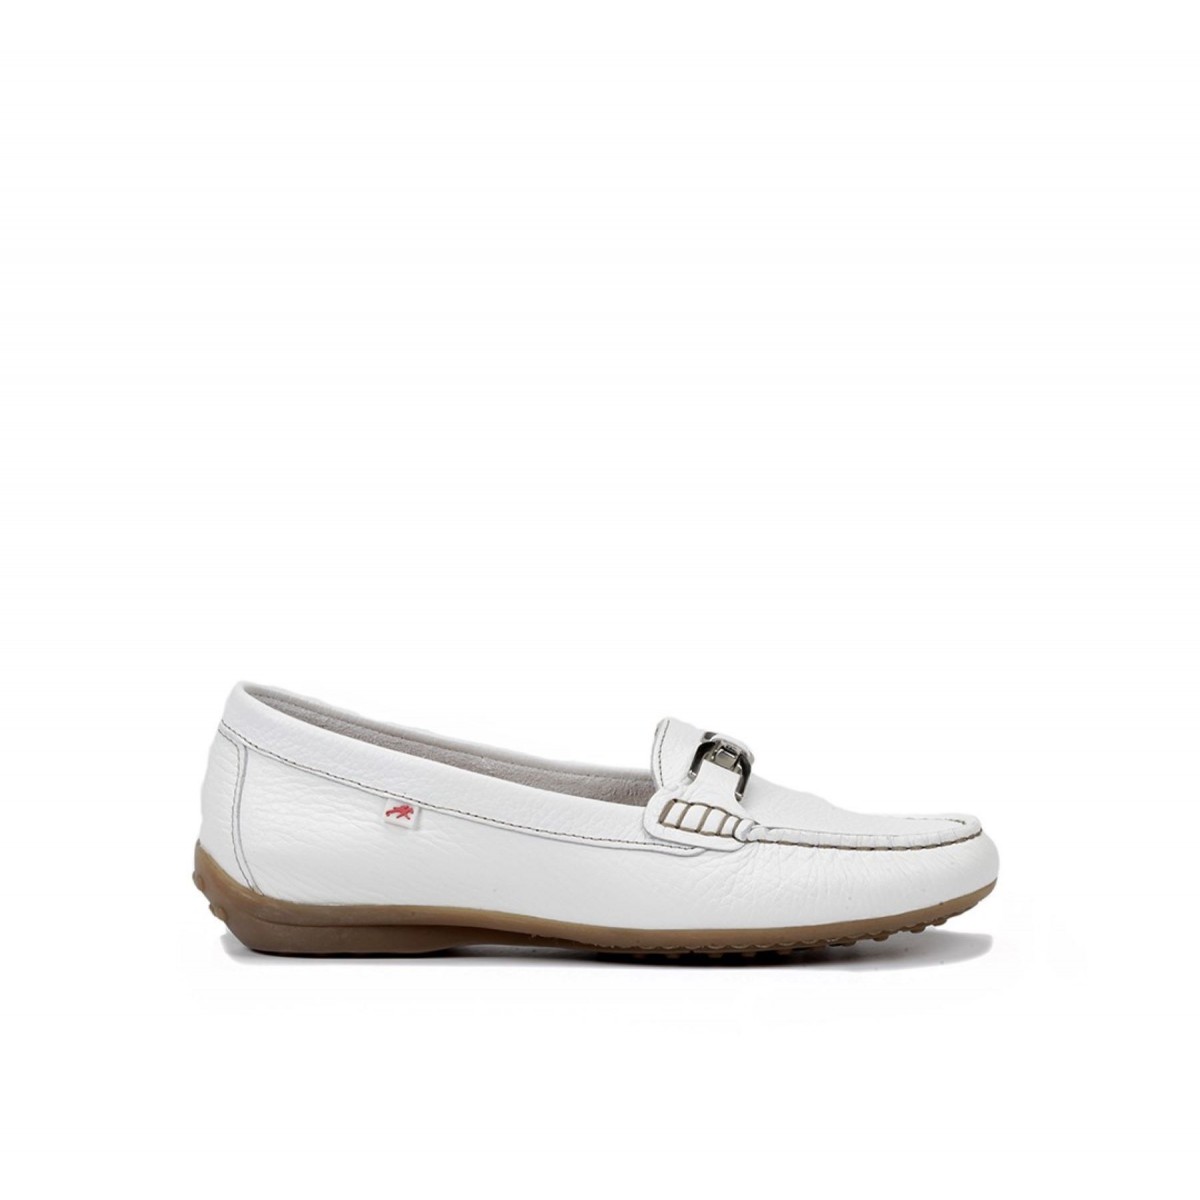 Zapato mocasín para mujer Fluchos Bruni blanco, crudo y marino F0804